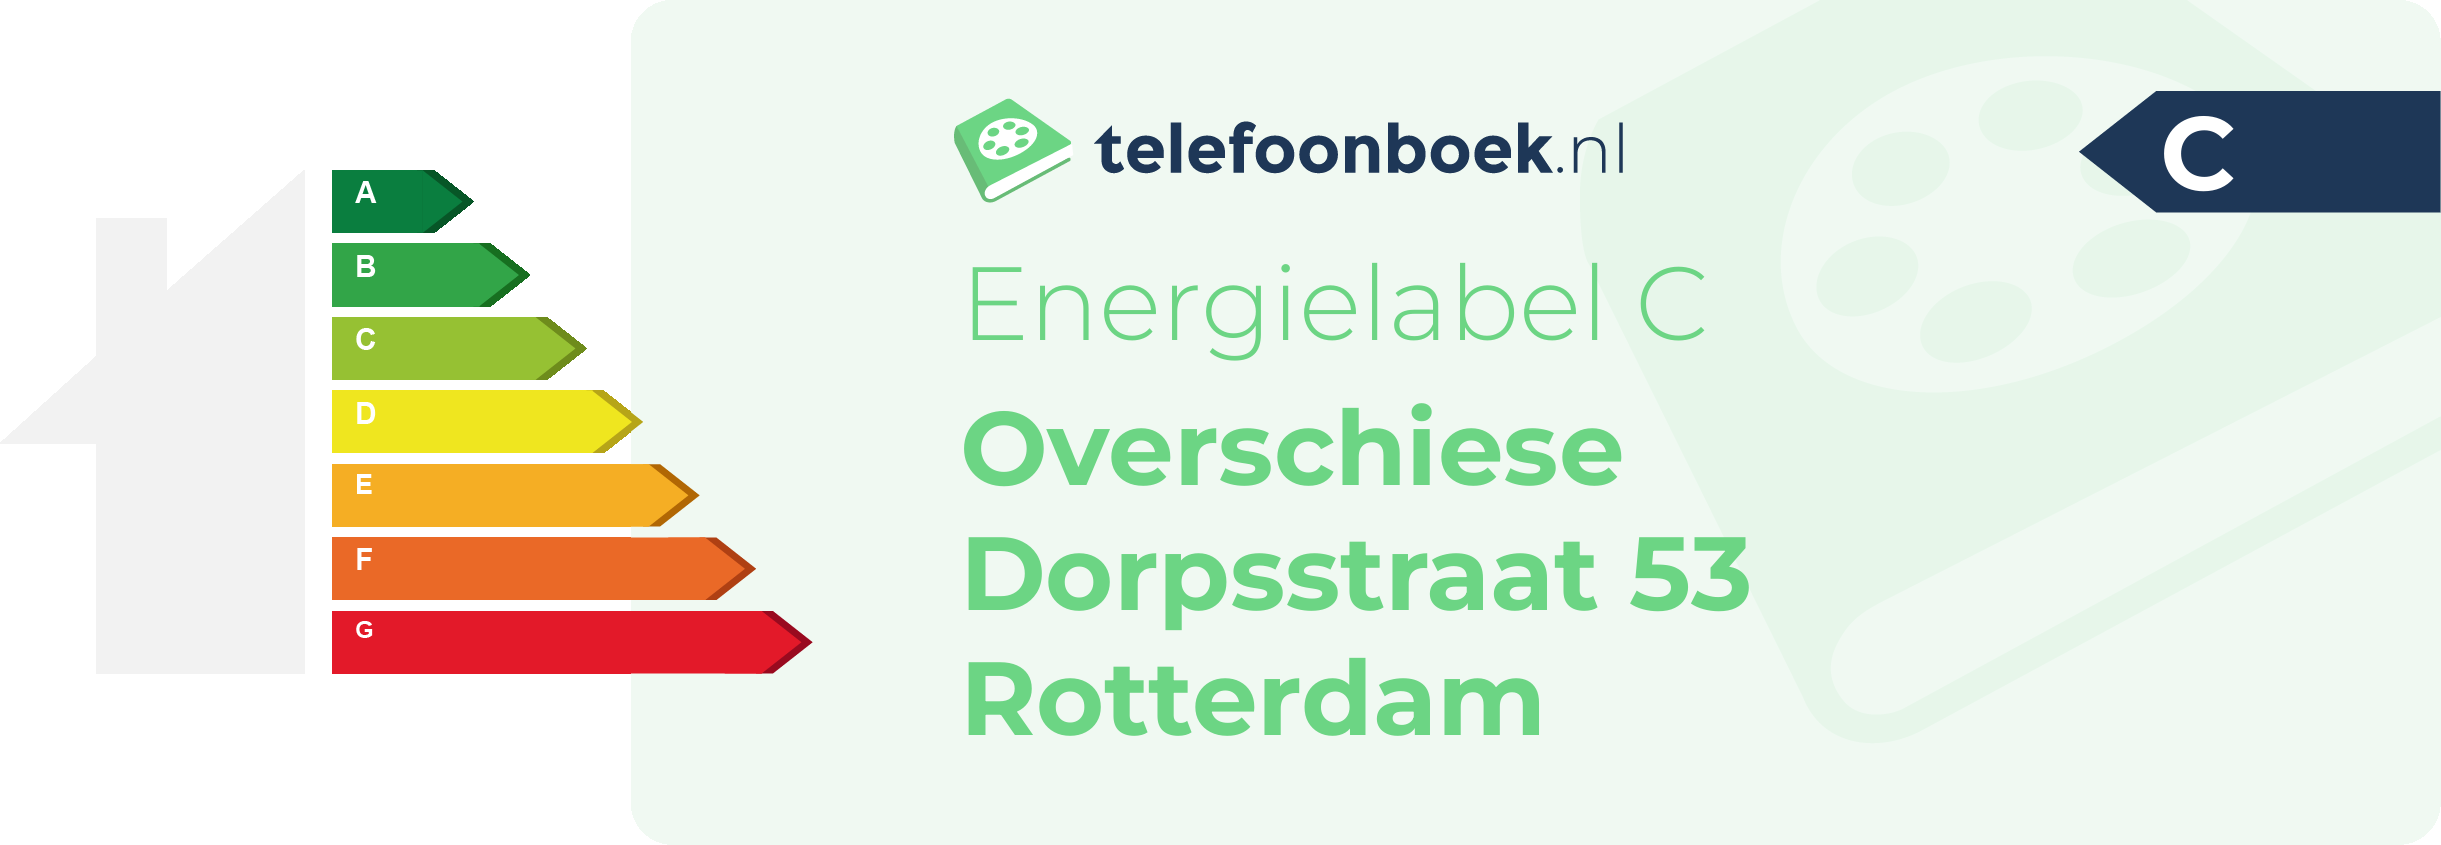 Energielabel Overschiese Dorpsstraat 53 Rotterdam